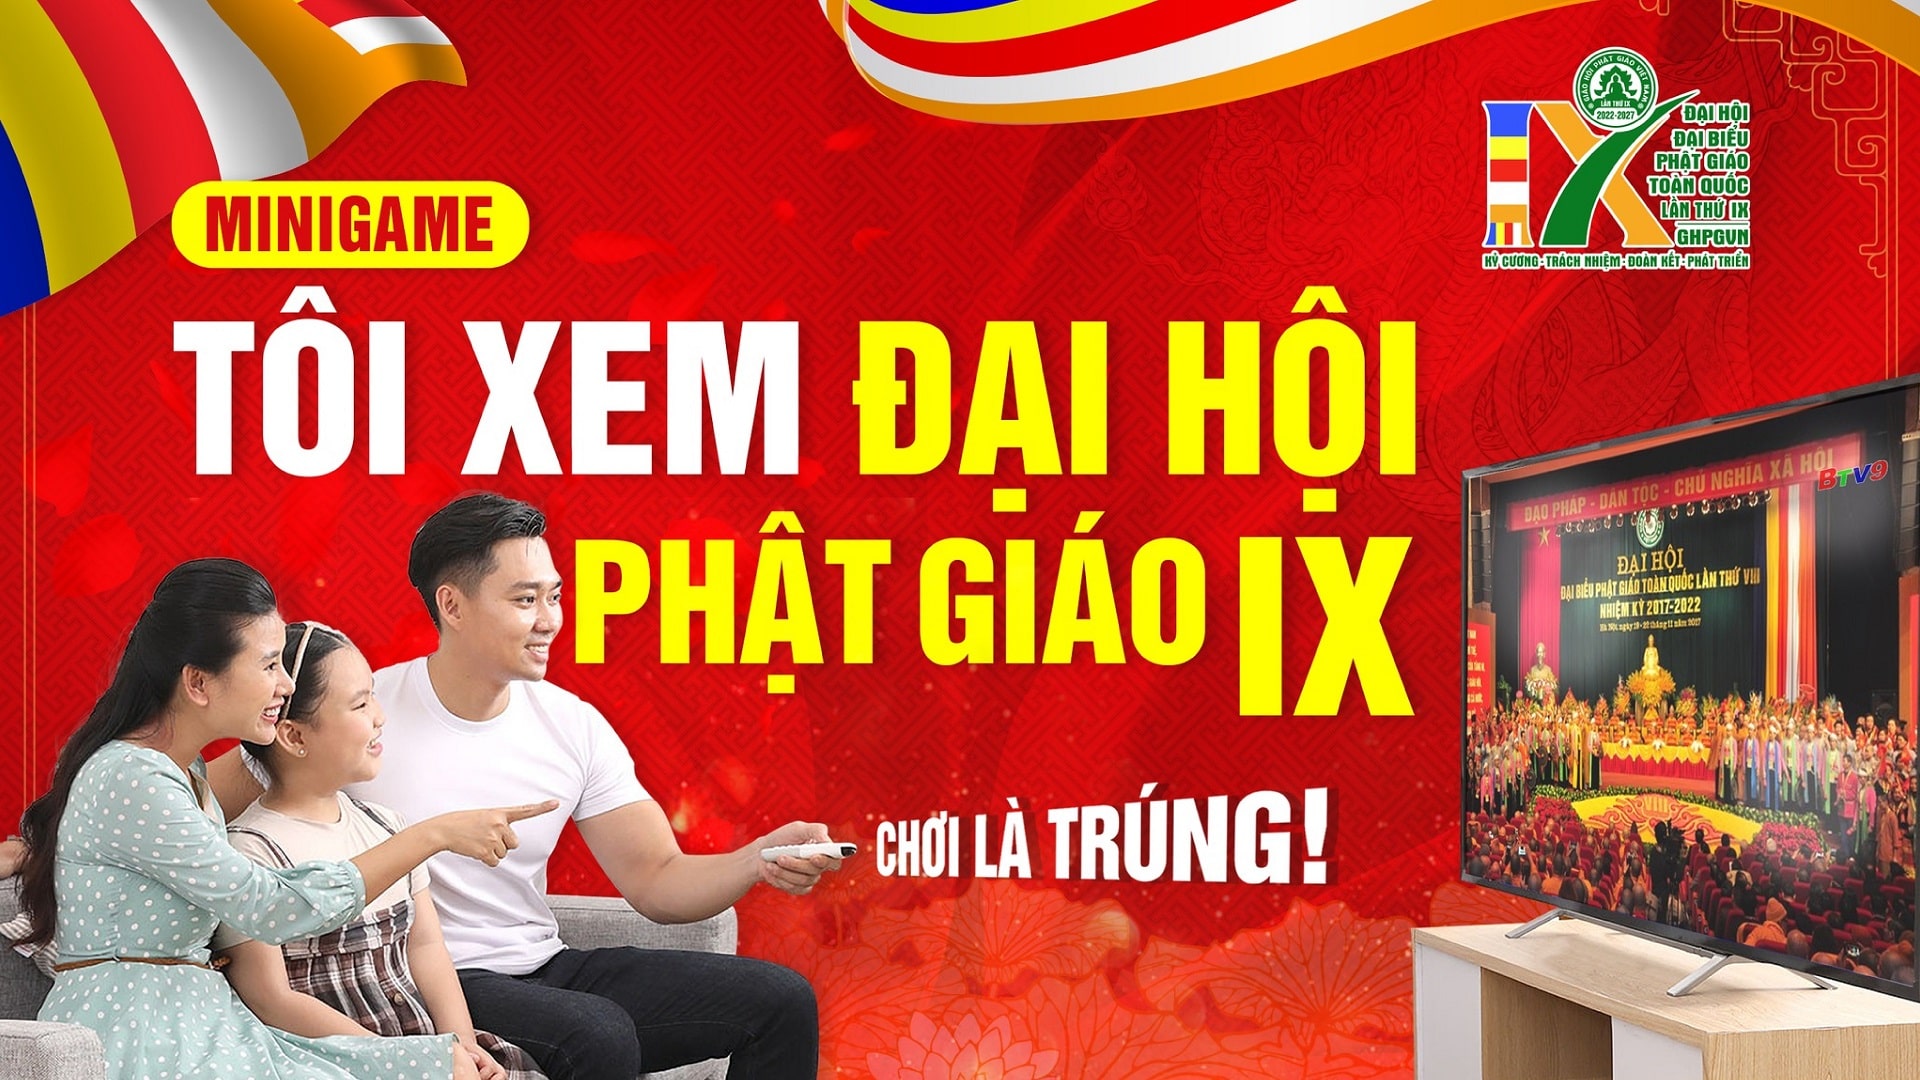 Minigame "Tôi xem Đại hội IX Giáo hội Phật giáo Việt Nam" - Cứ Xem Là Trúng